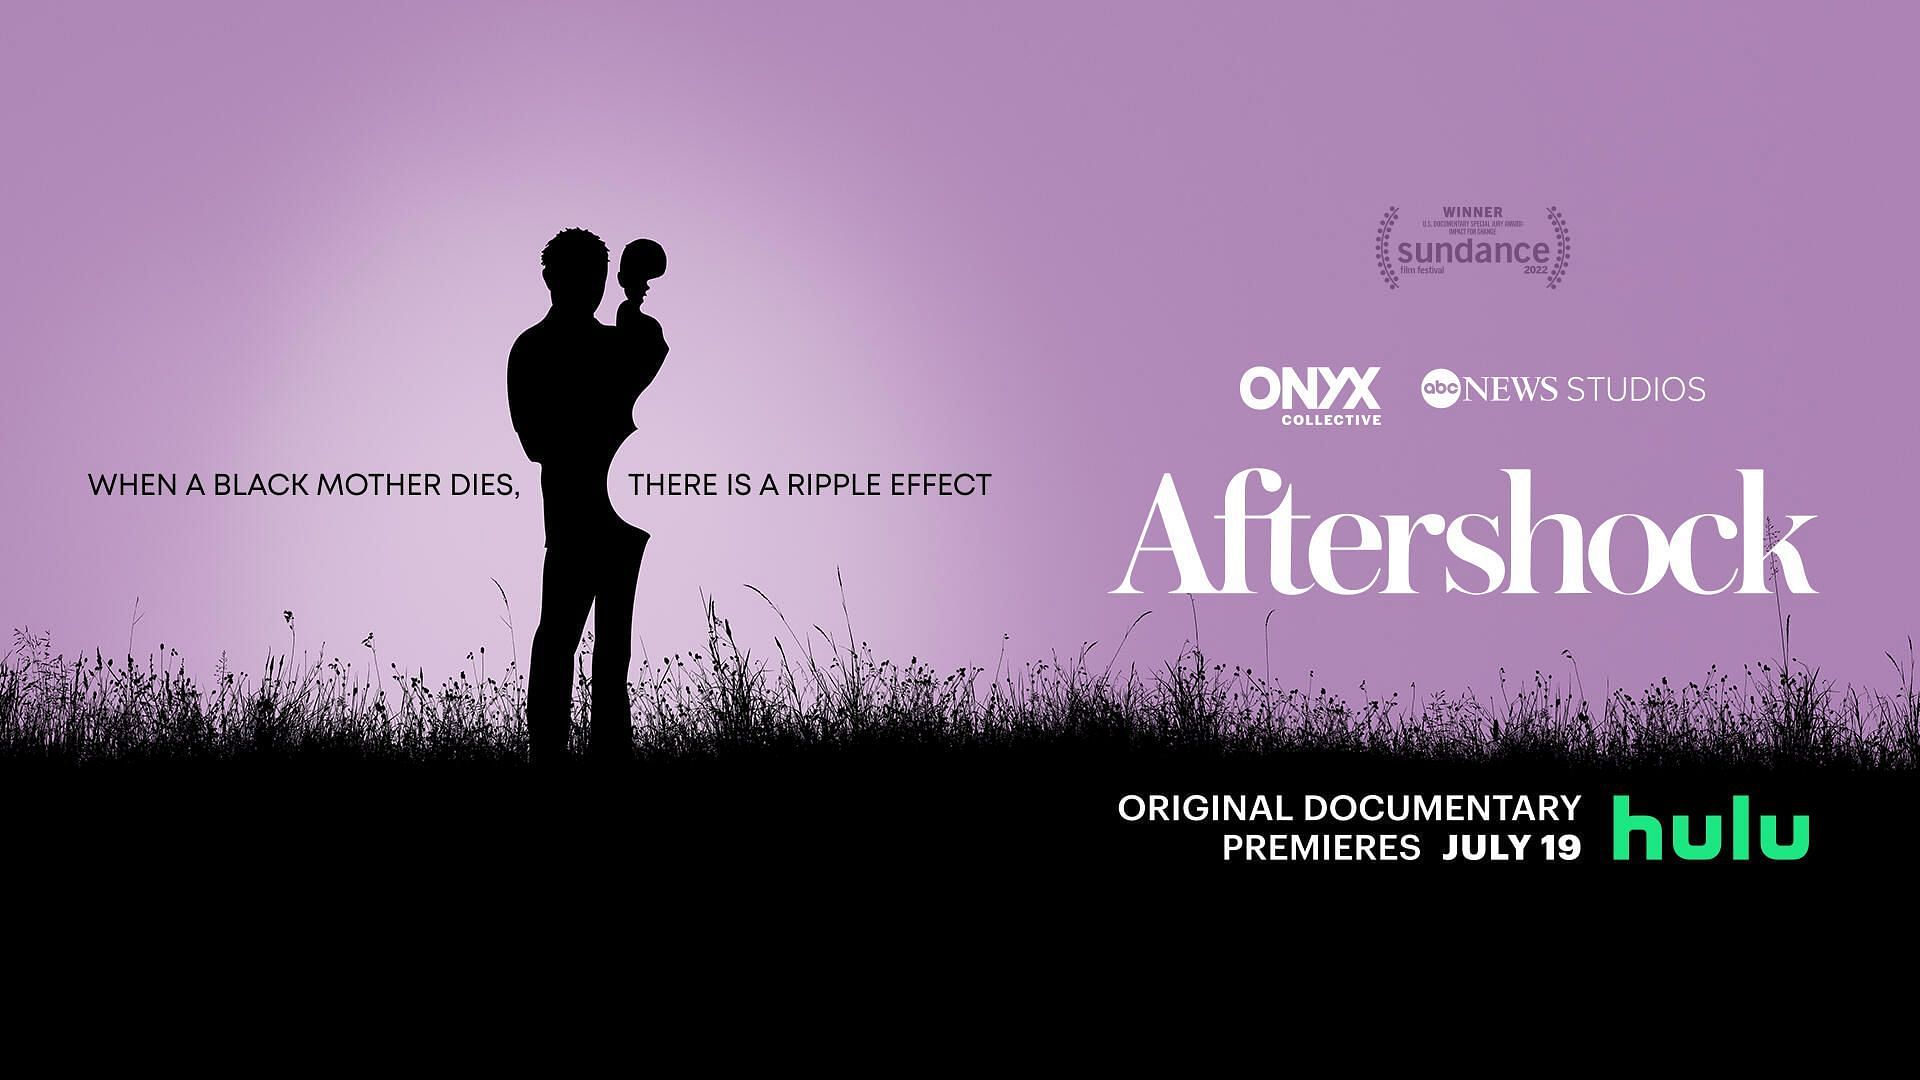 Aftershock is one of the documentaries releasing this week (Image via Hulu)